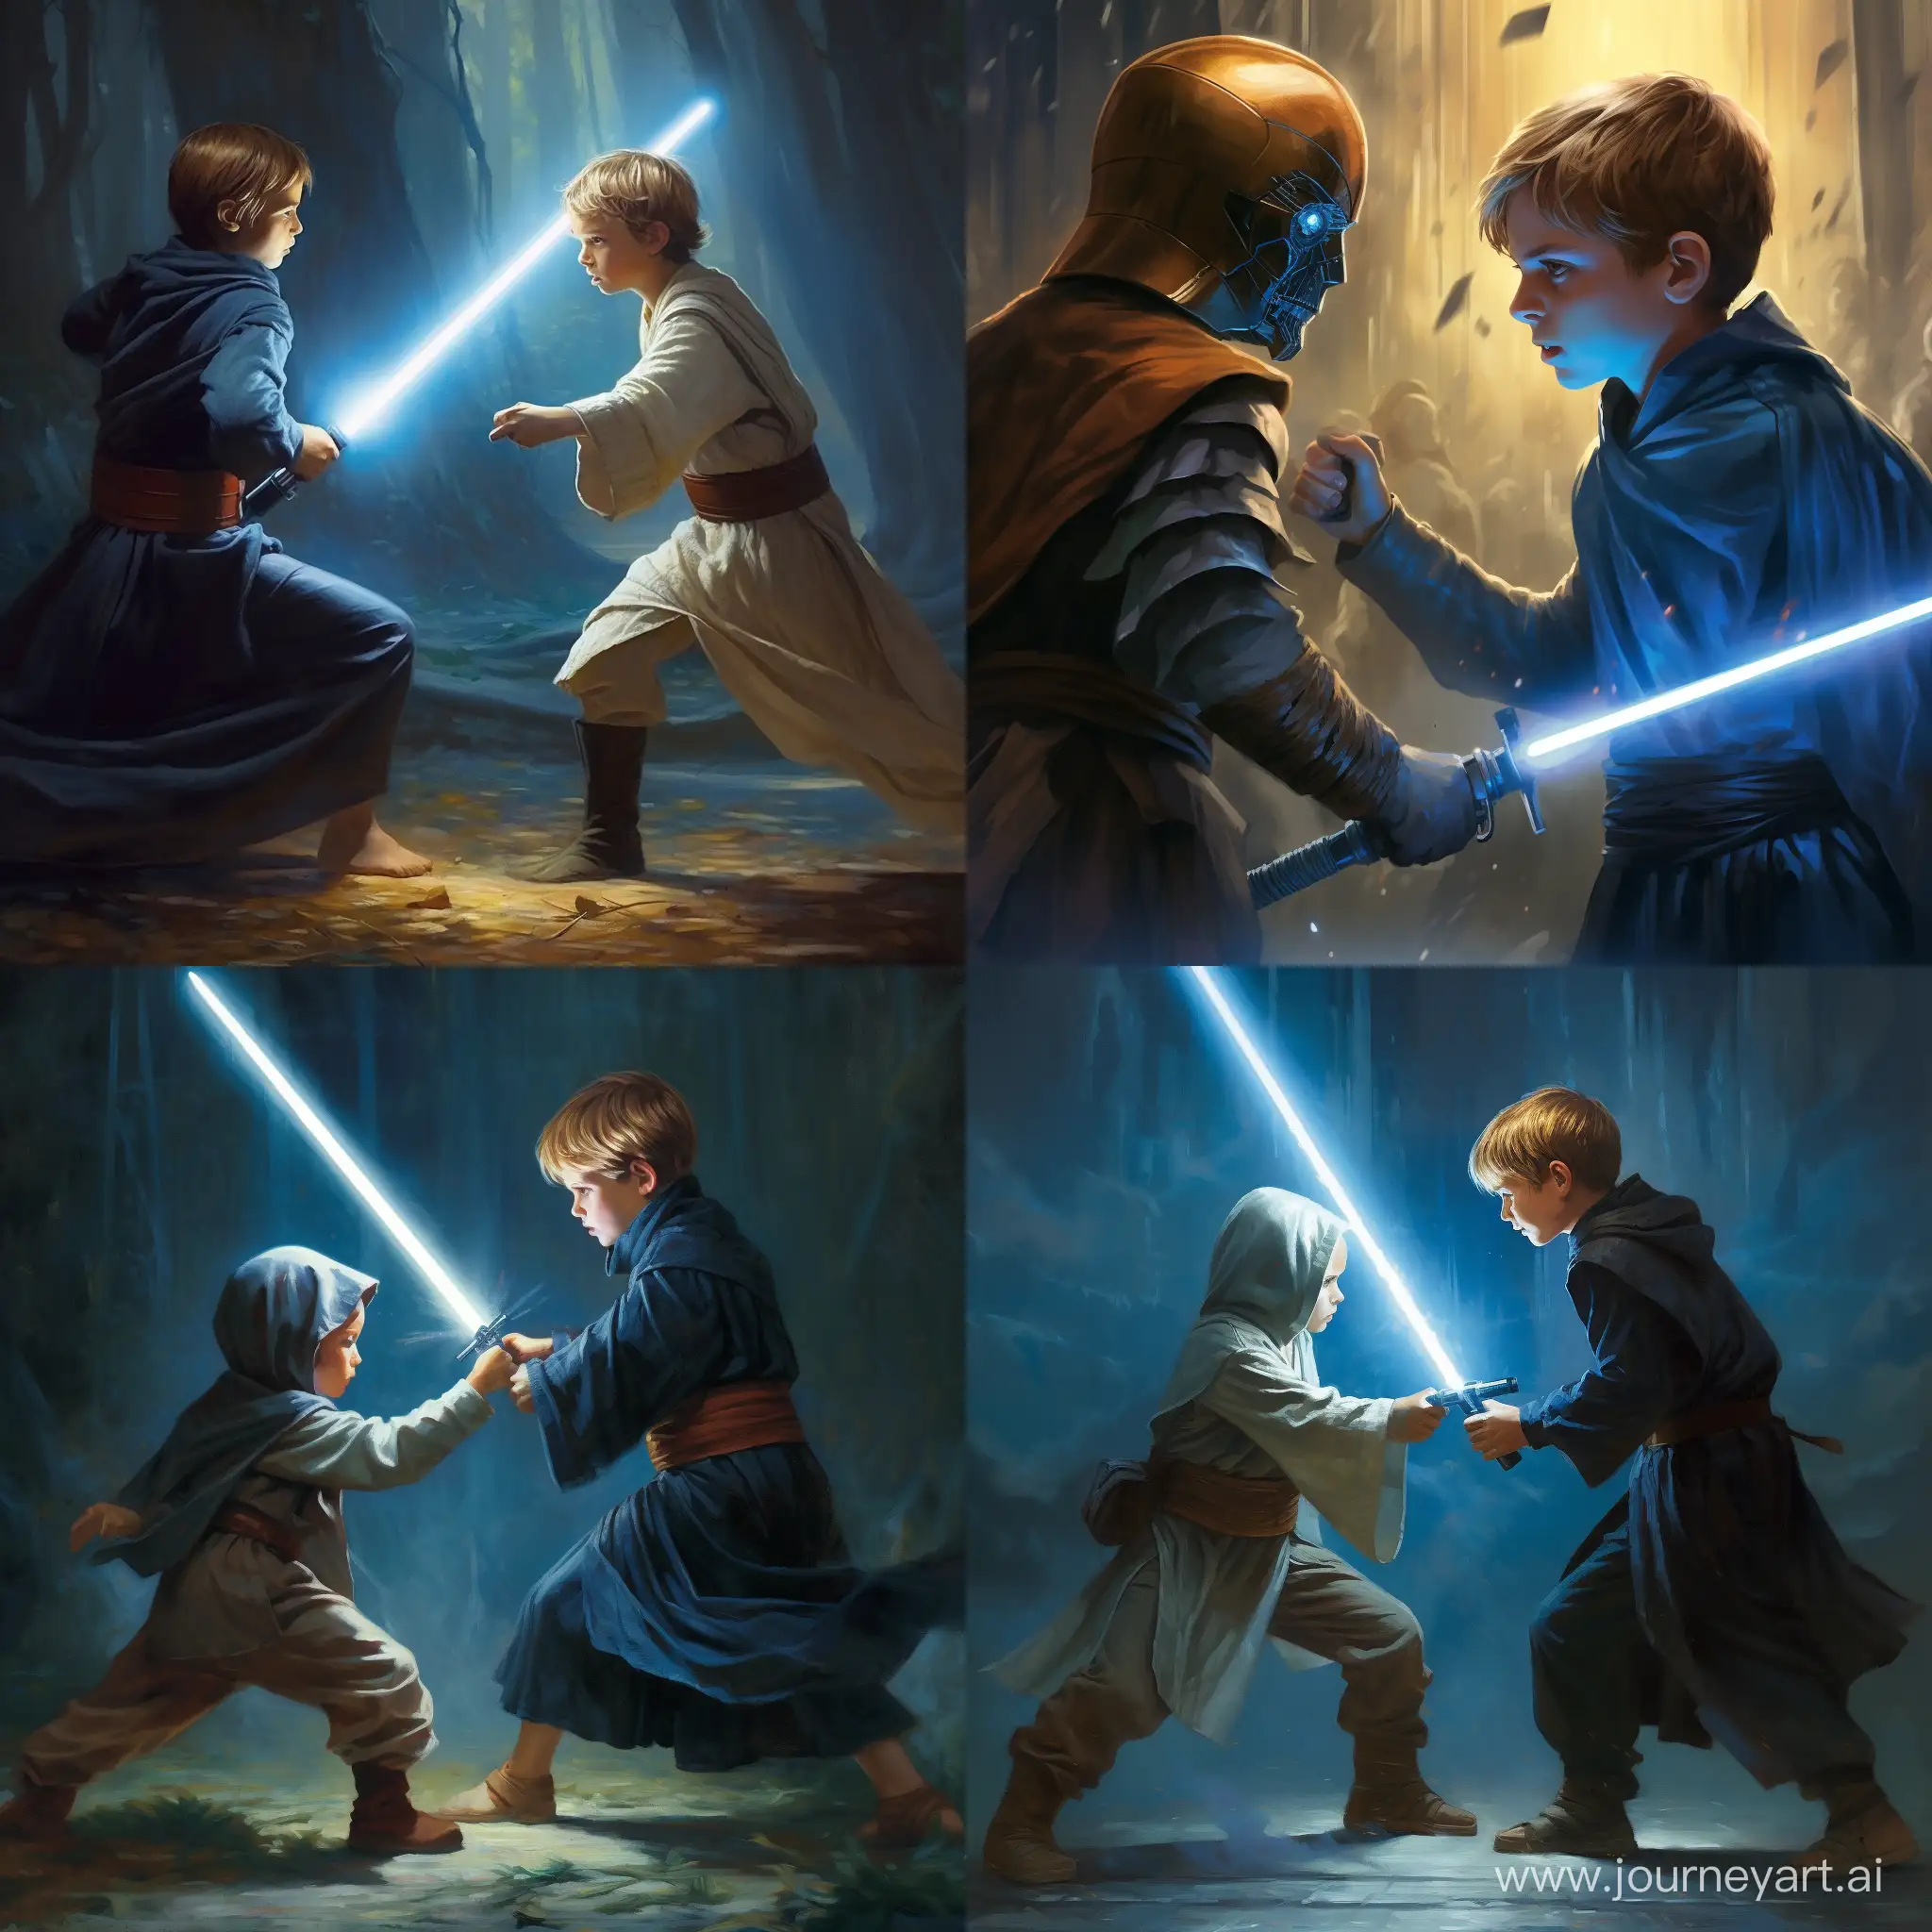 Молодой Энакин Скайуокер с синим светом мечом сражается с Оби-Ваном Кеноби с синим световым мечом